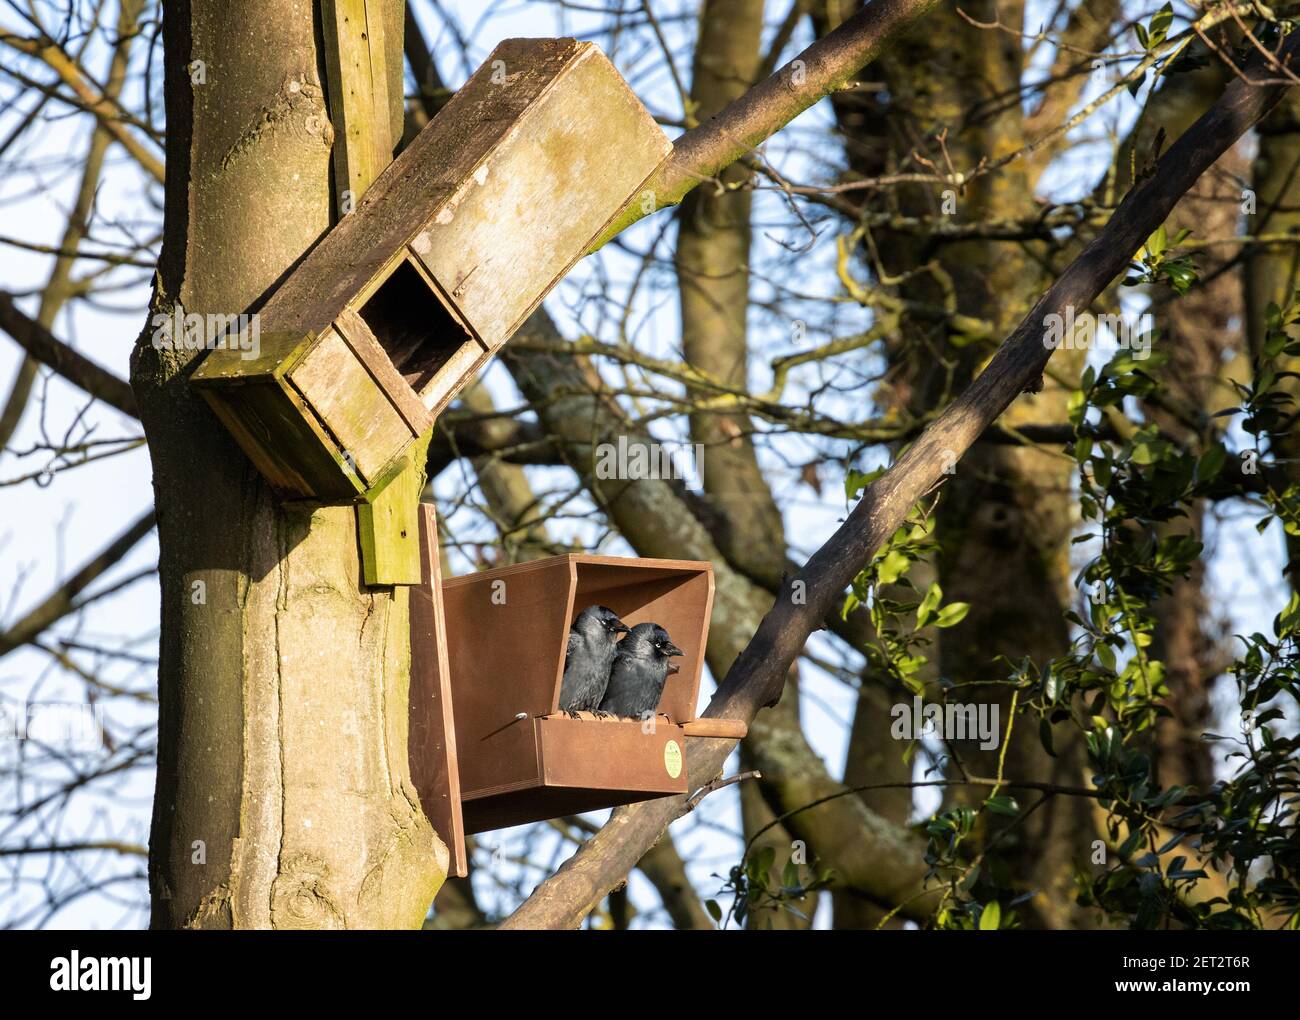 Britische Tierwelt: Zeichen des Frühlings - zwei Dohlen (Corvus monedula) sitzen in einem neuen Turmfalken-Nistkasten und sehen so aus, als hätten sie ihren Nistplatz West Yo gewählt Stockfoto